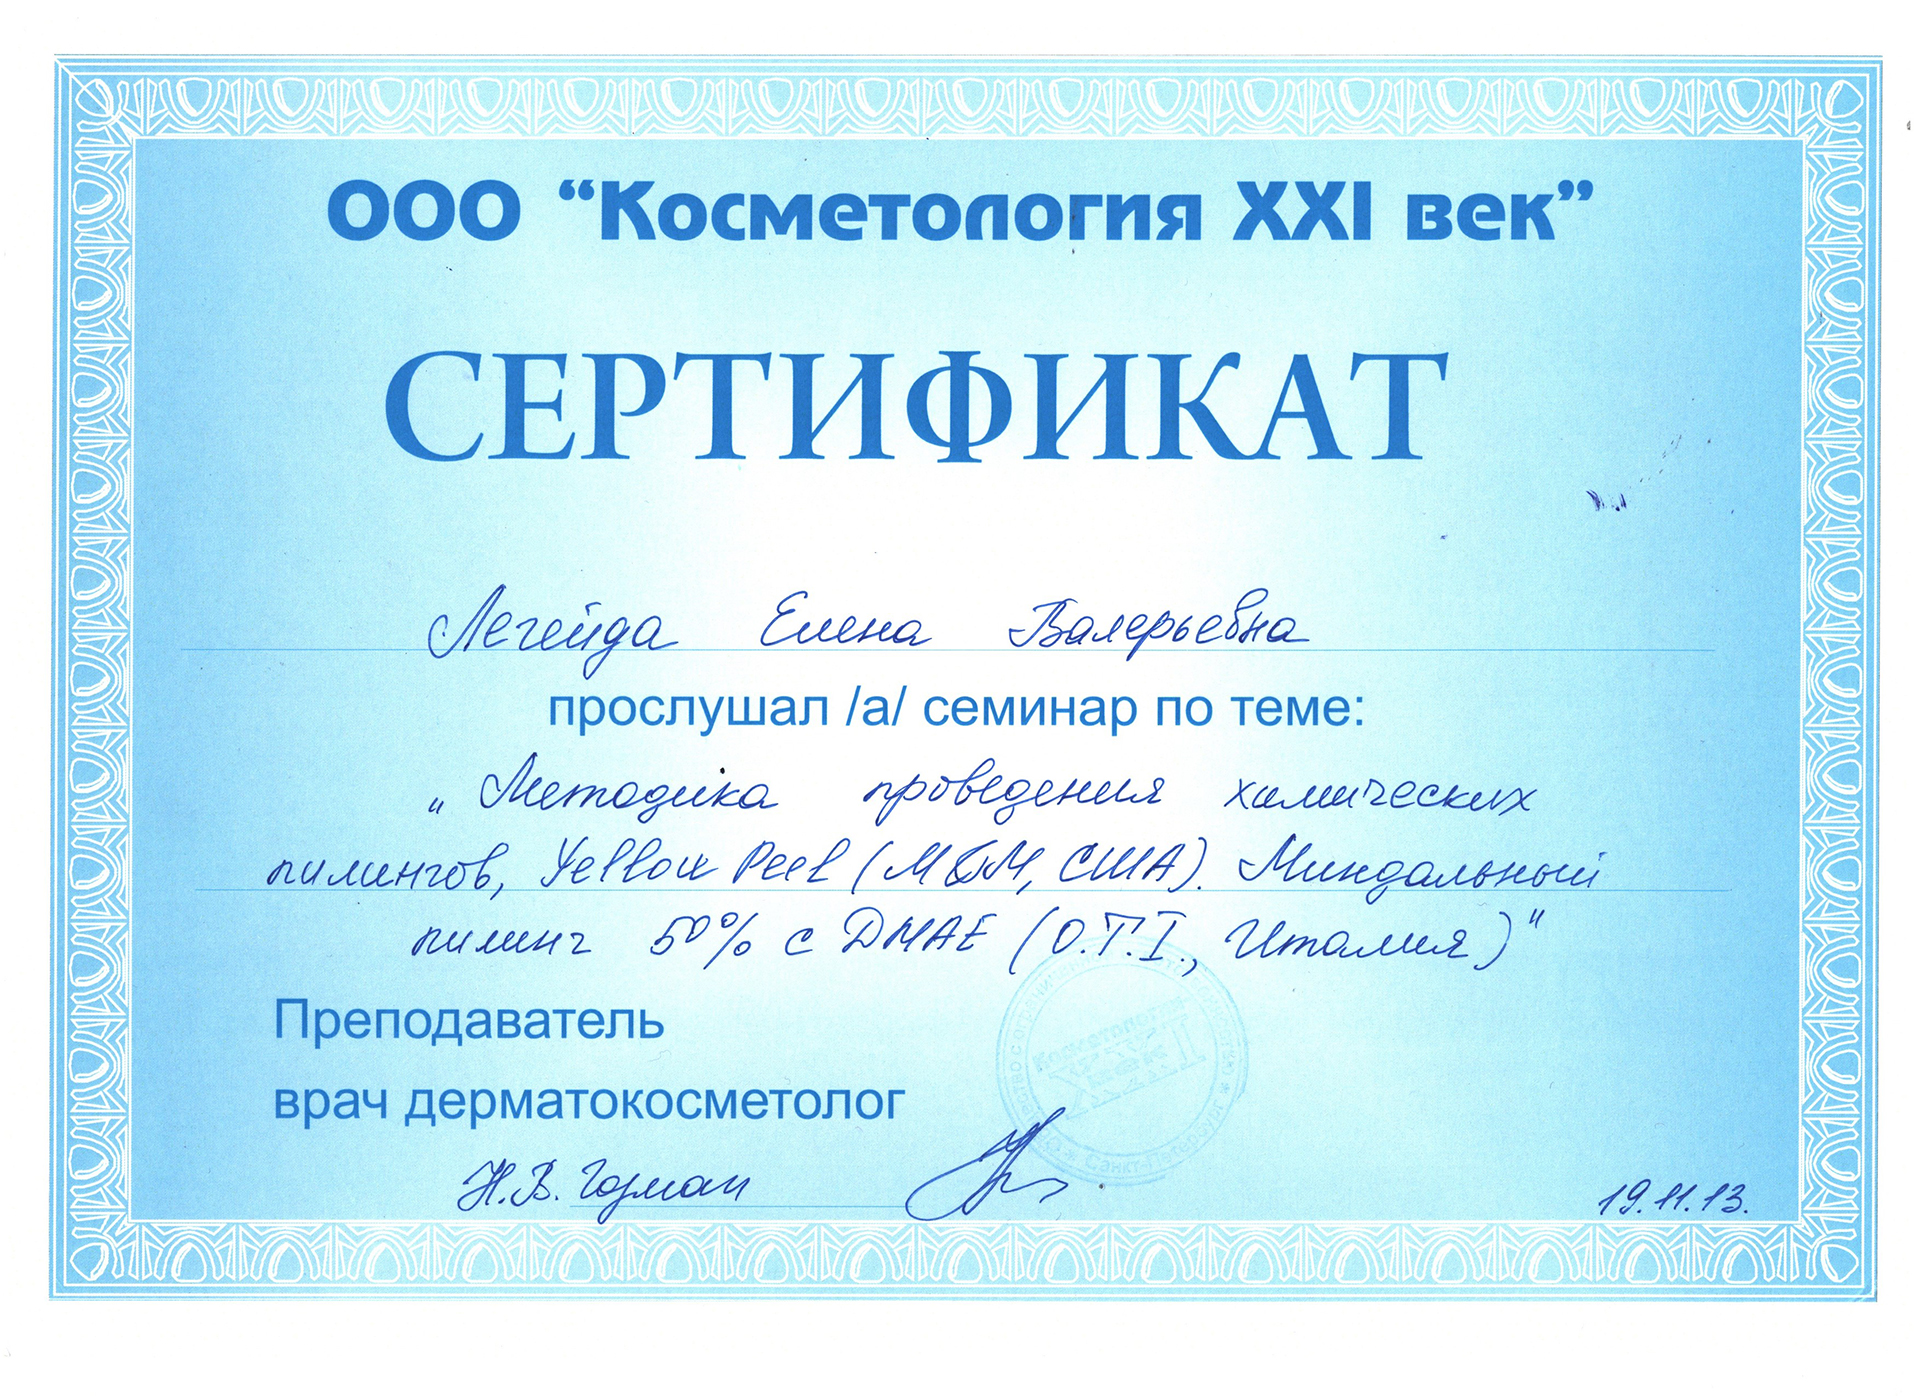 Сертификат — Методика проведение химических пилингов. Легейда Елена Валерьевна